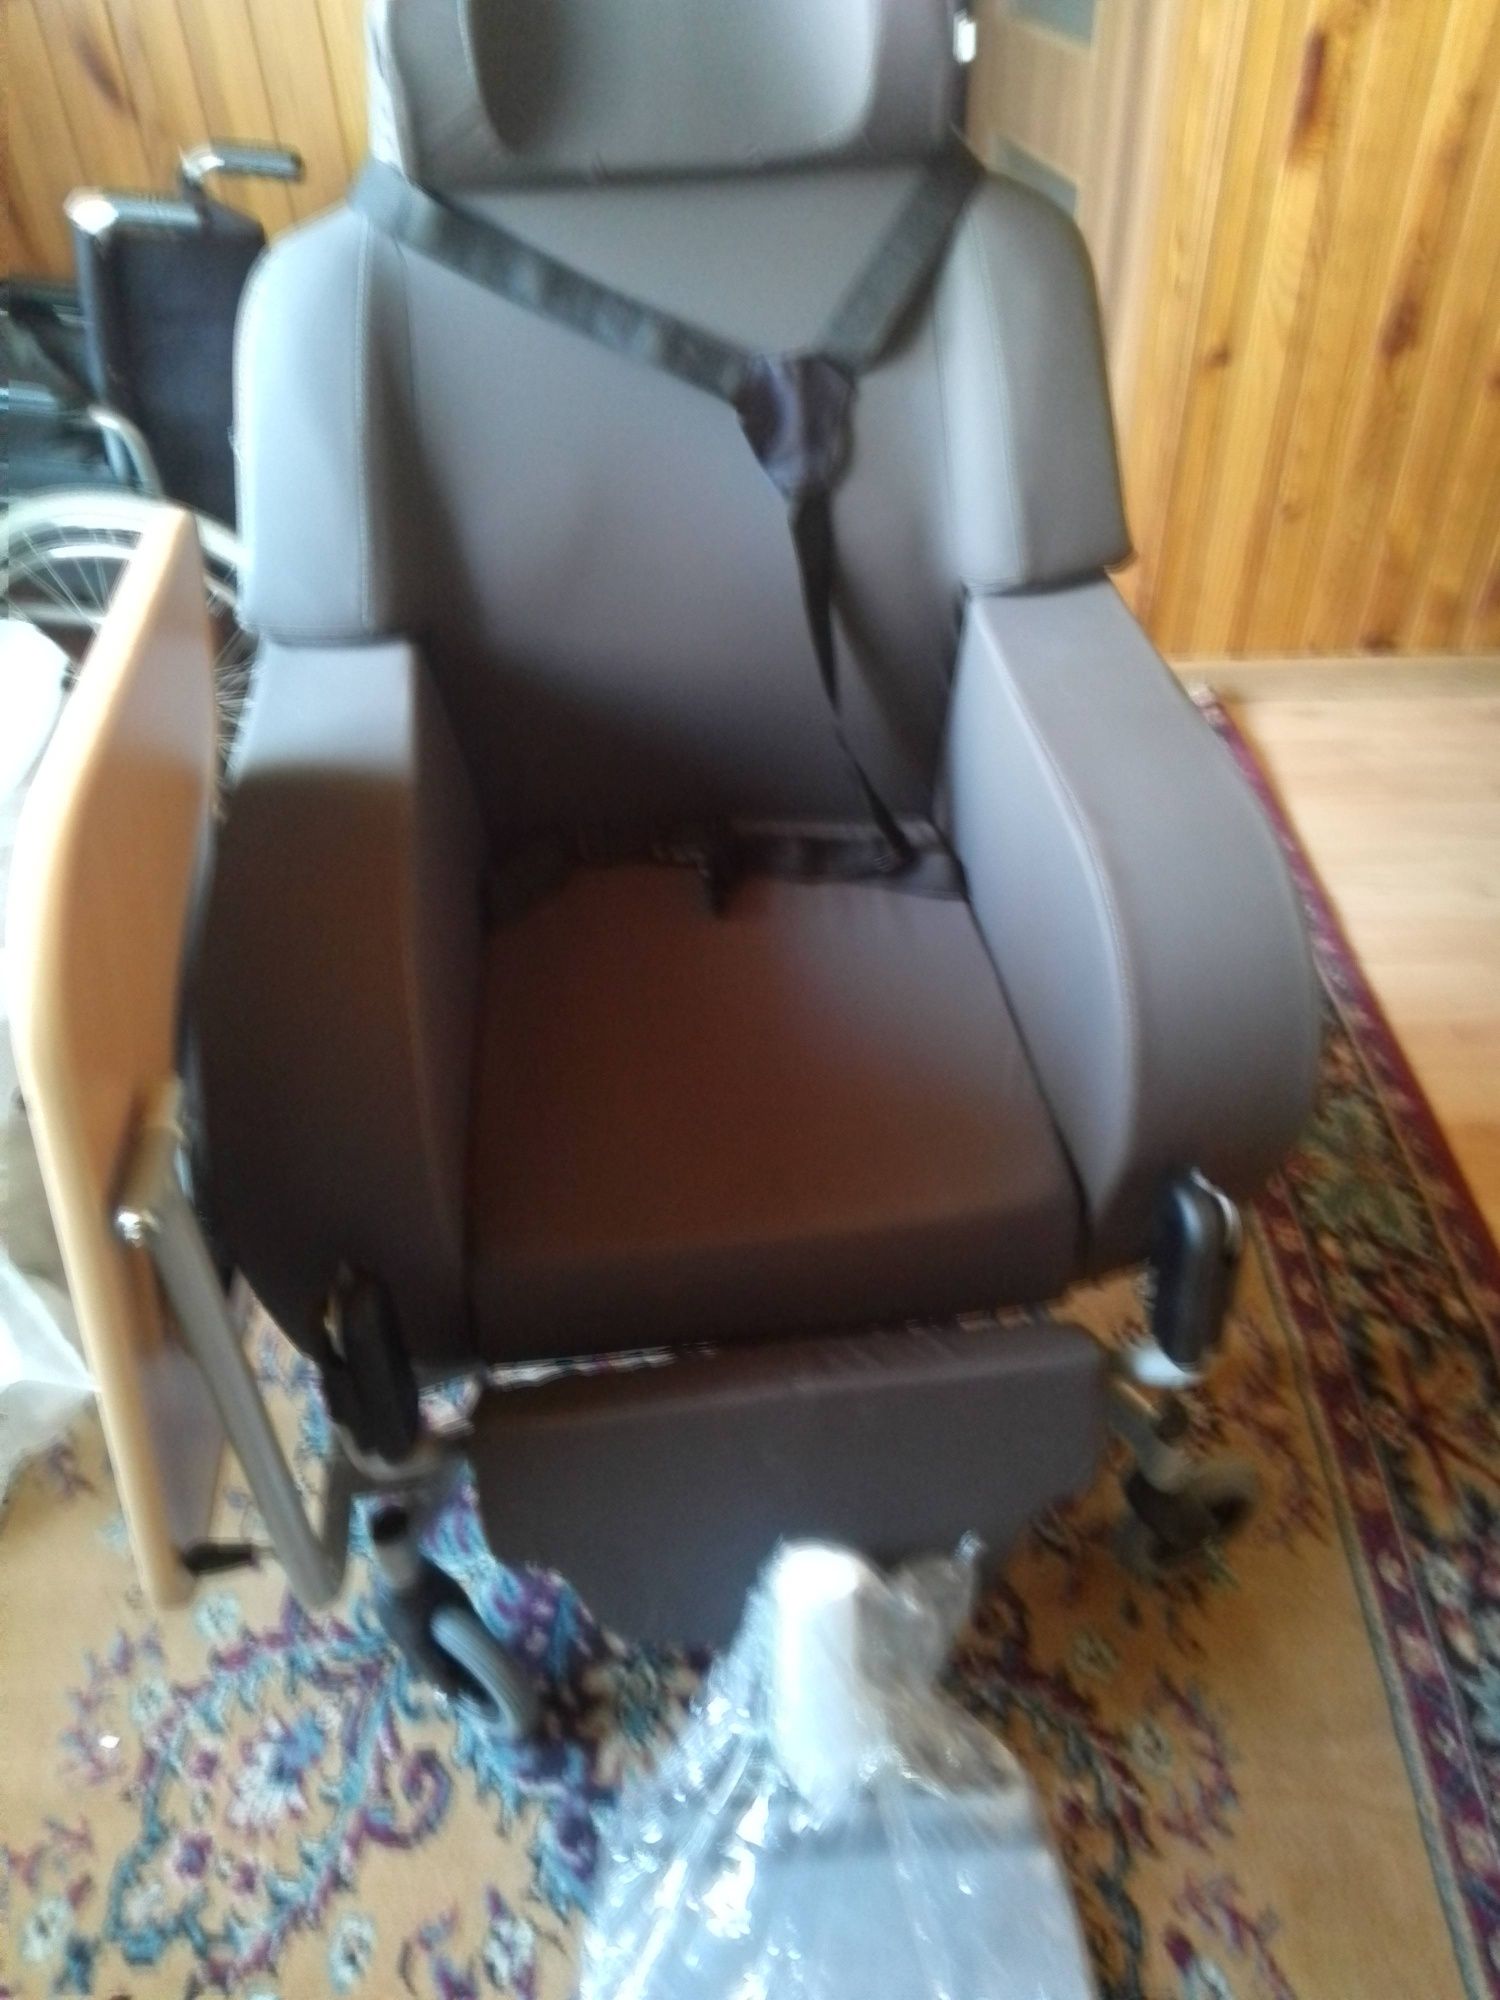 Specjalistyczny wózek inwalidzki.